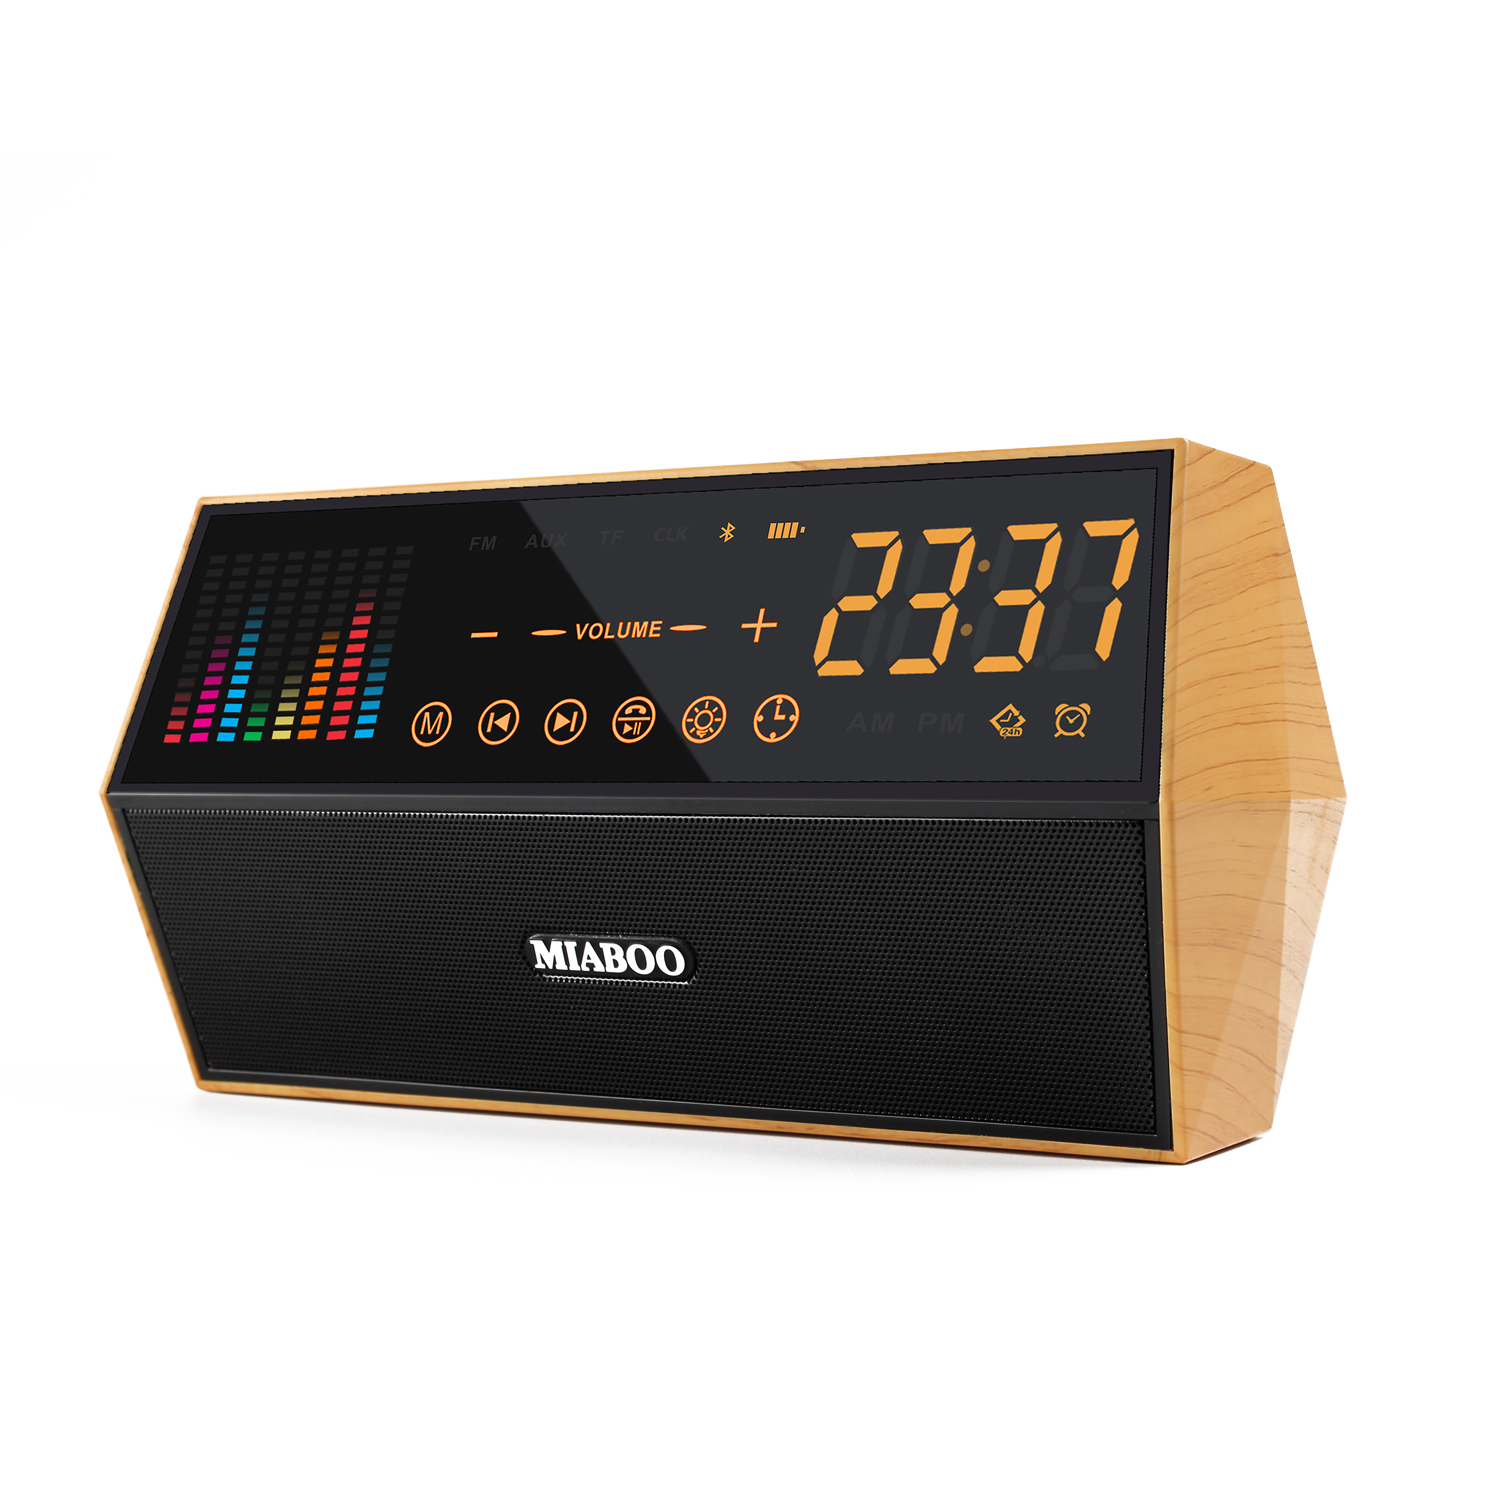 

Miaboo FM Радио Smart Часы Bluetooth Емкостная сенсорная сенсорная панель Часы LED Беспроводная карта TF AUX Динамики Сигнализация Часы